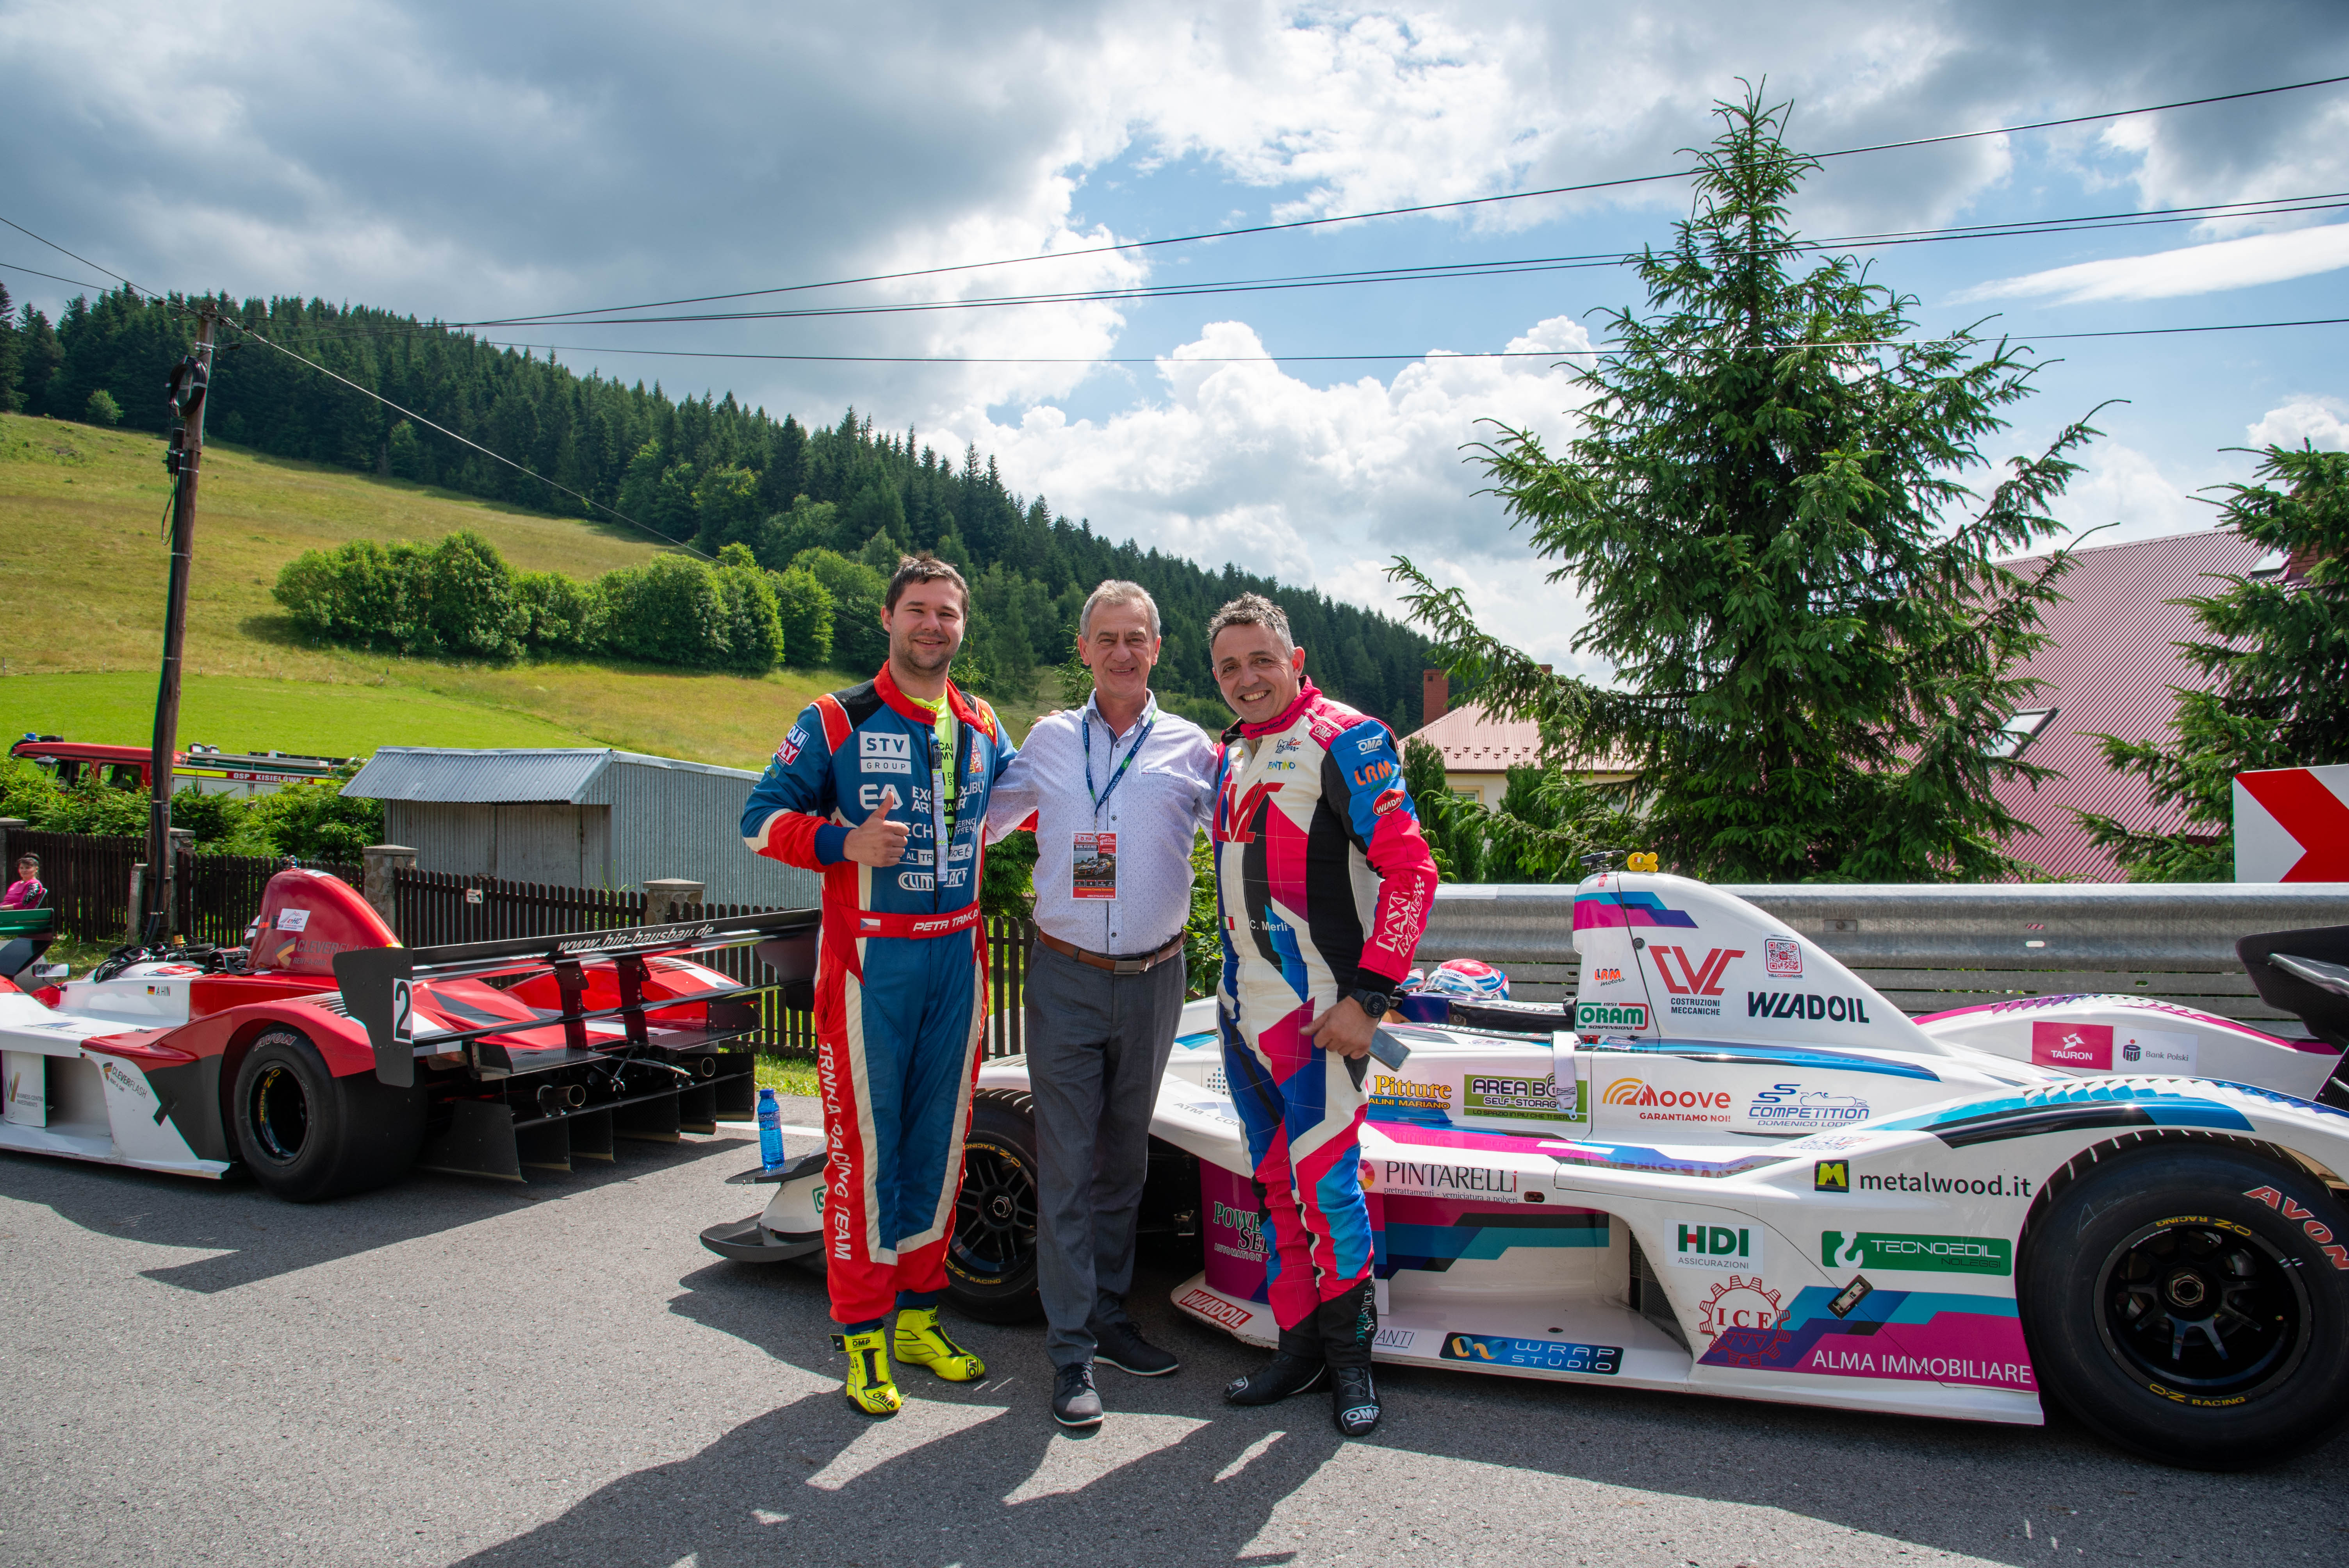 Starosta Limanowski pozuje do zdjęcia przy samochodach wyścigowych wraz z Krystianem Merlim i Petrem Trnka.